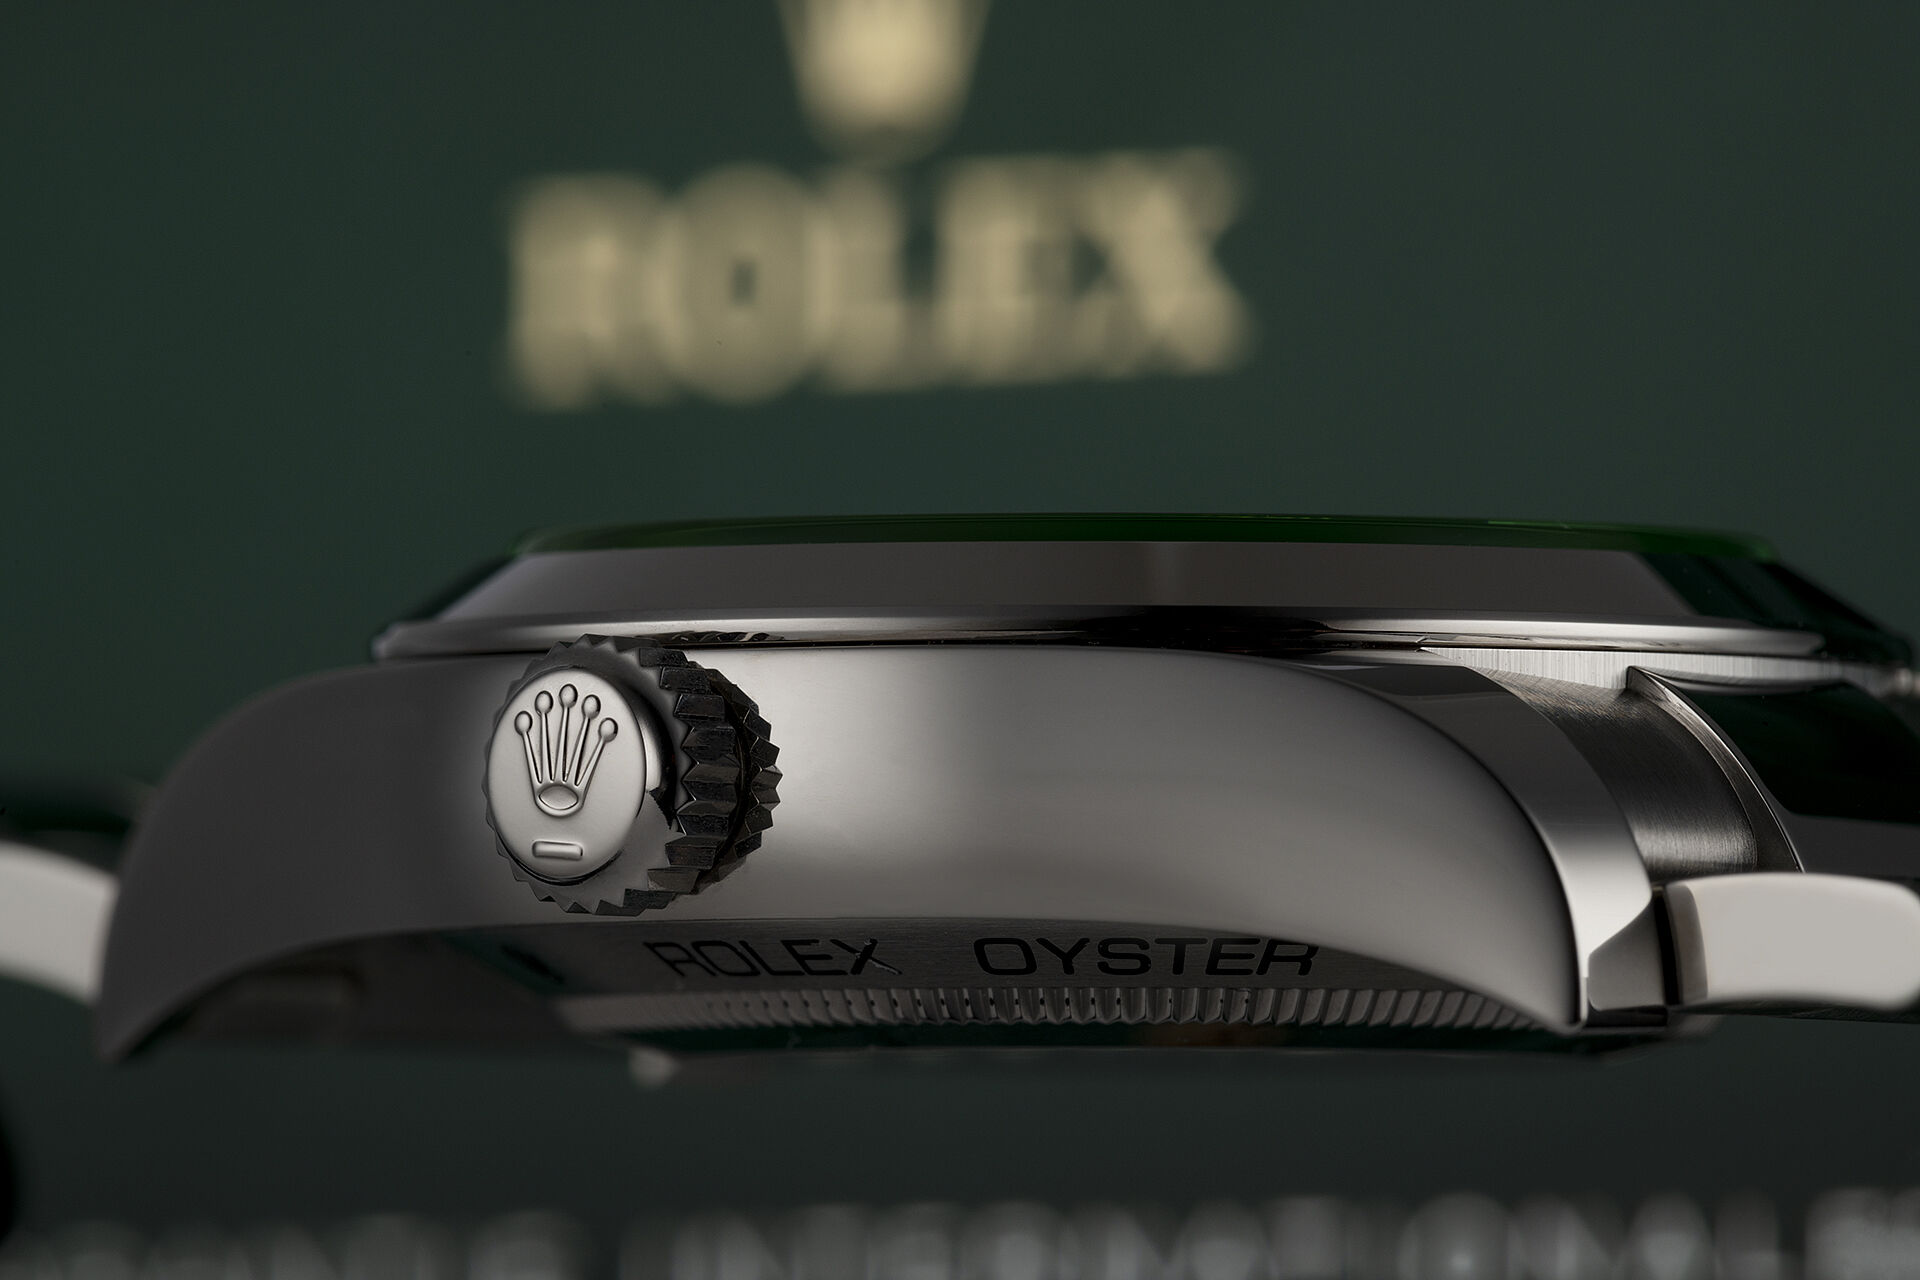 ref 116400GV | Rolex Warranty to 2025 | Rolex Milgauss